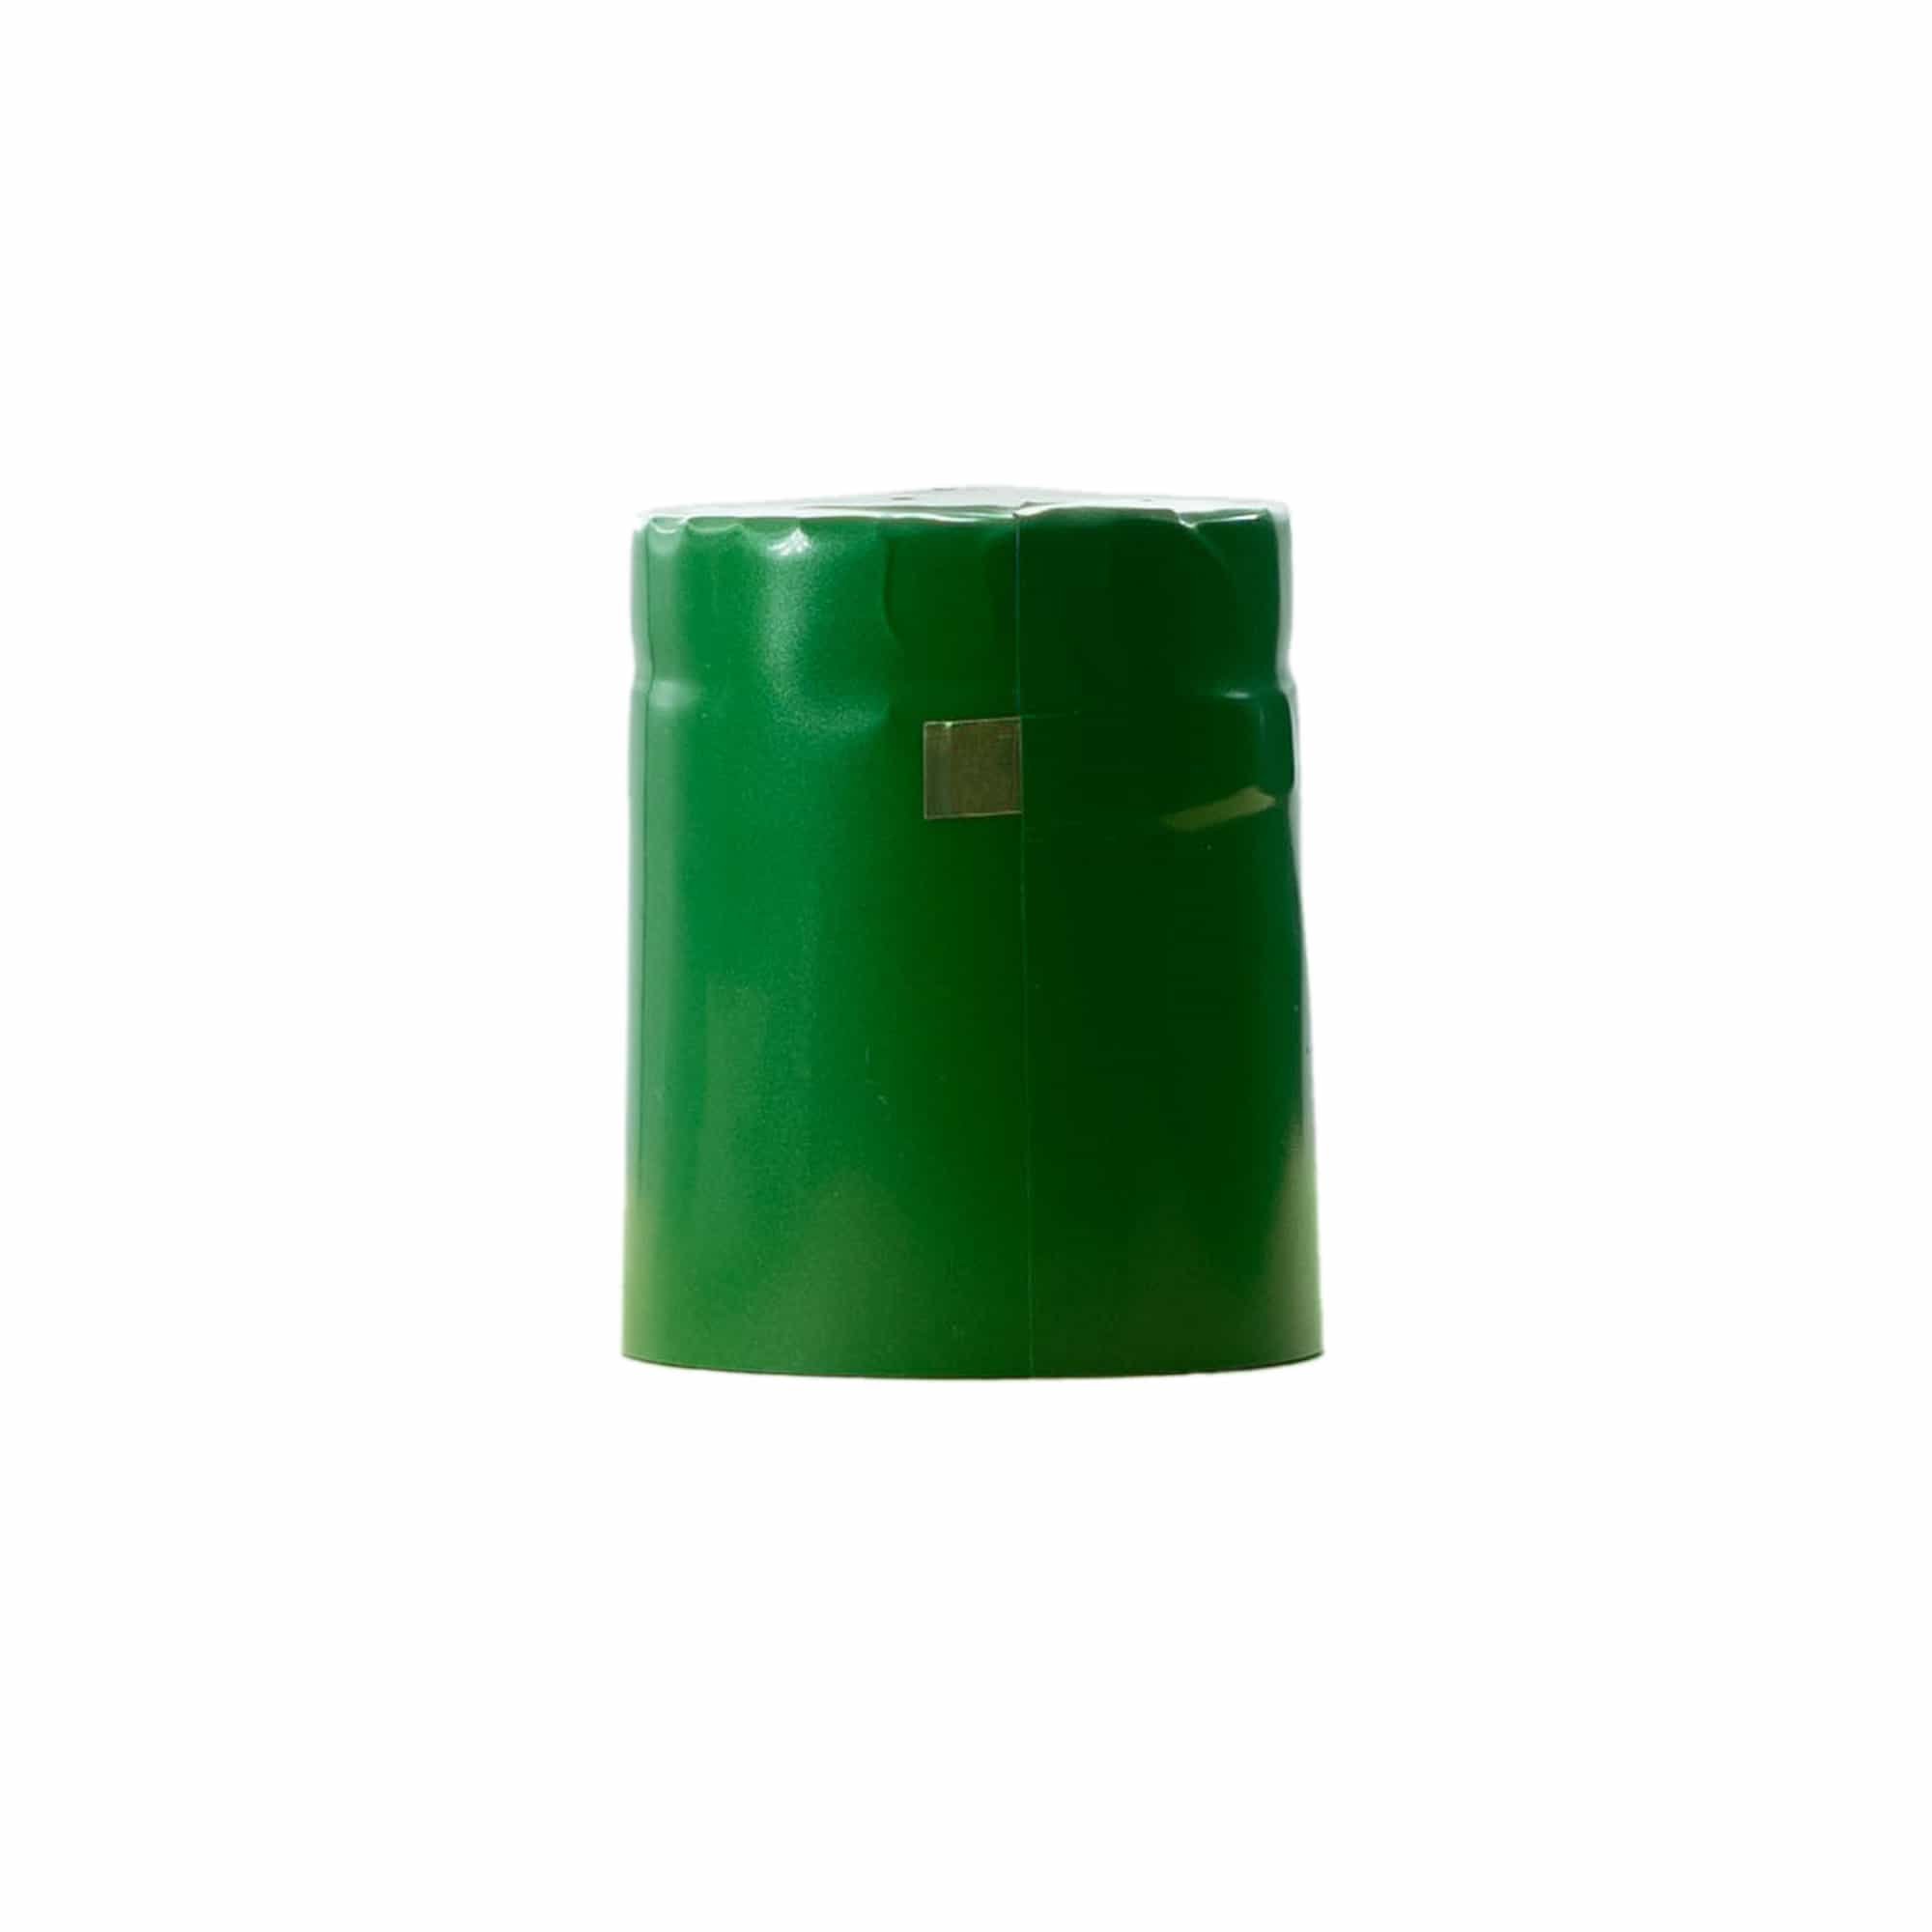 Krimpcapsule 32x41, pvc-kunststof, groen